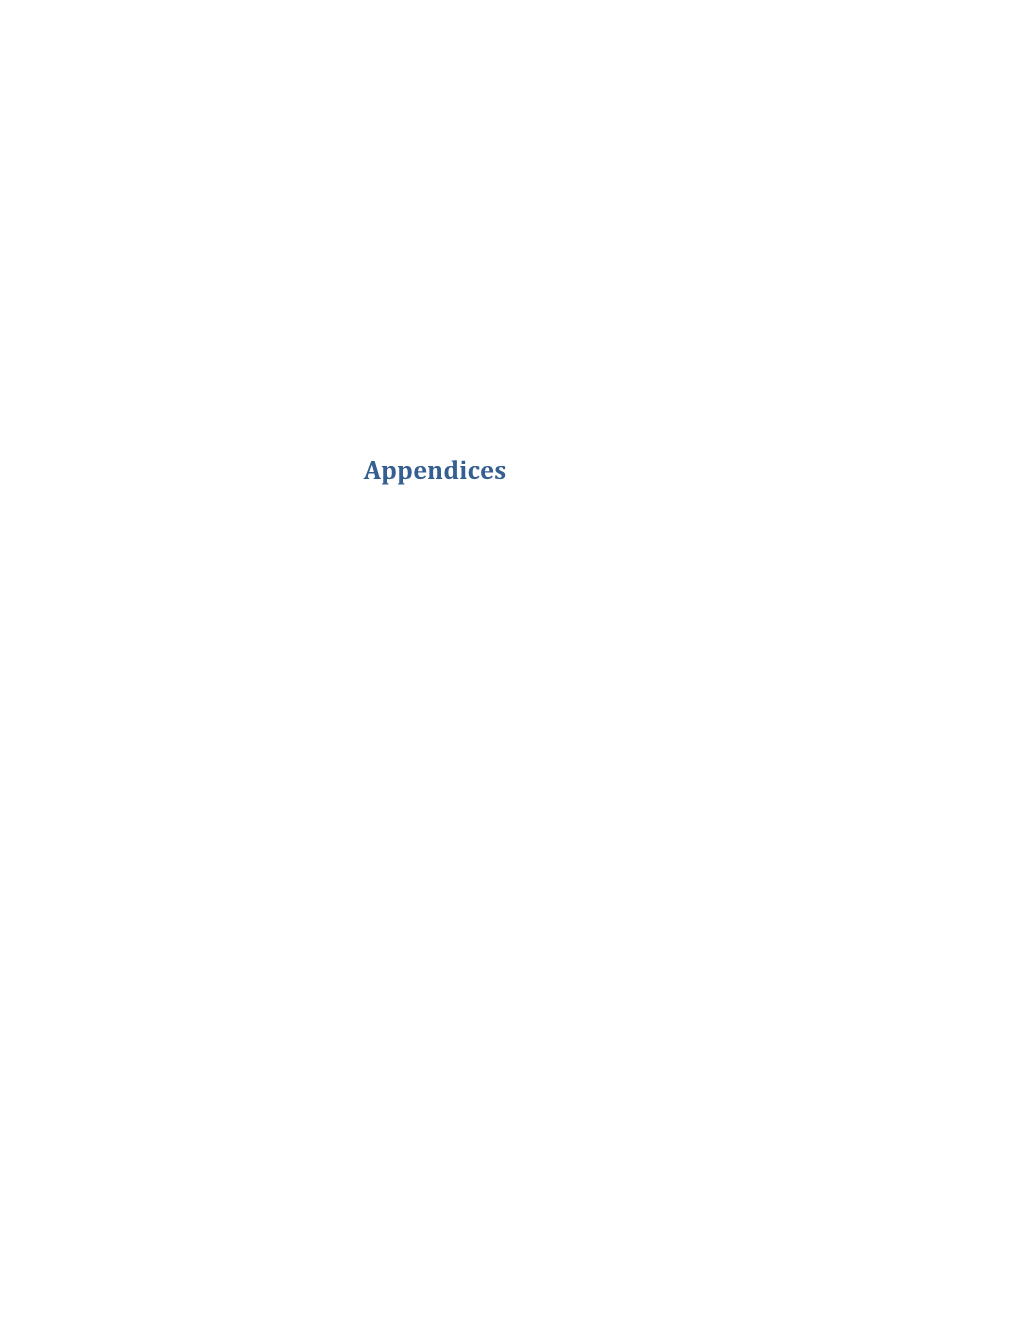 Appendix 1. Asset Record Card